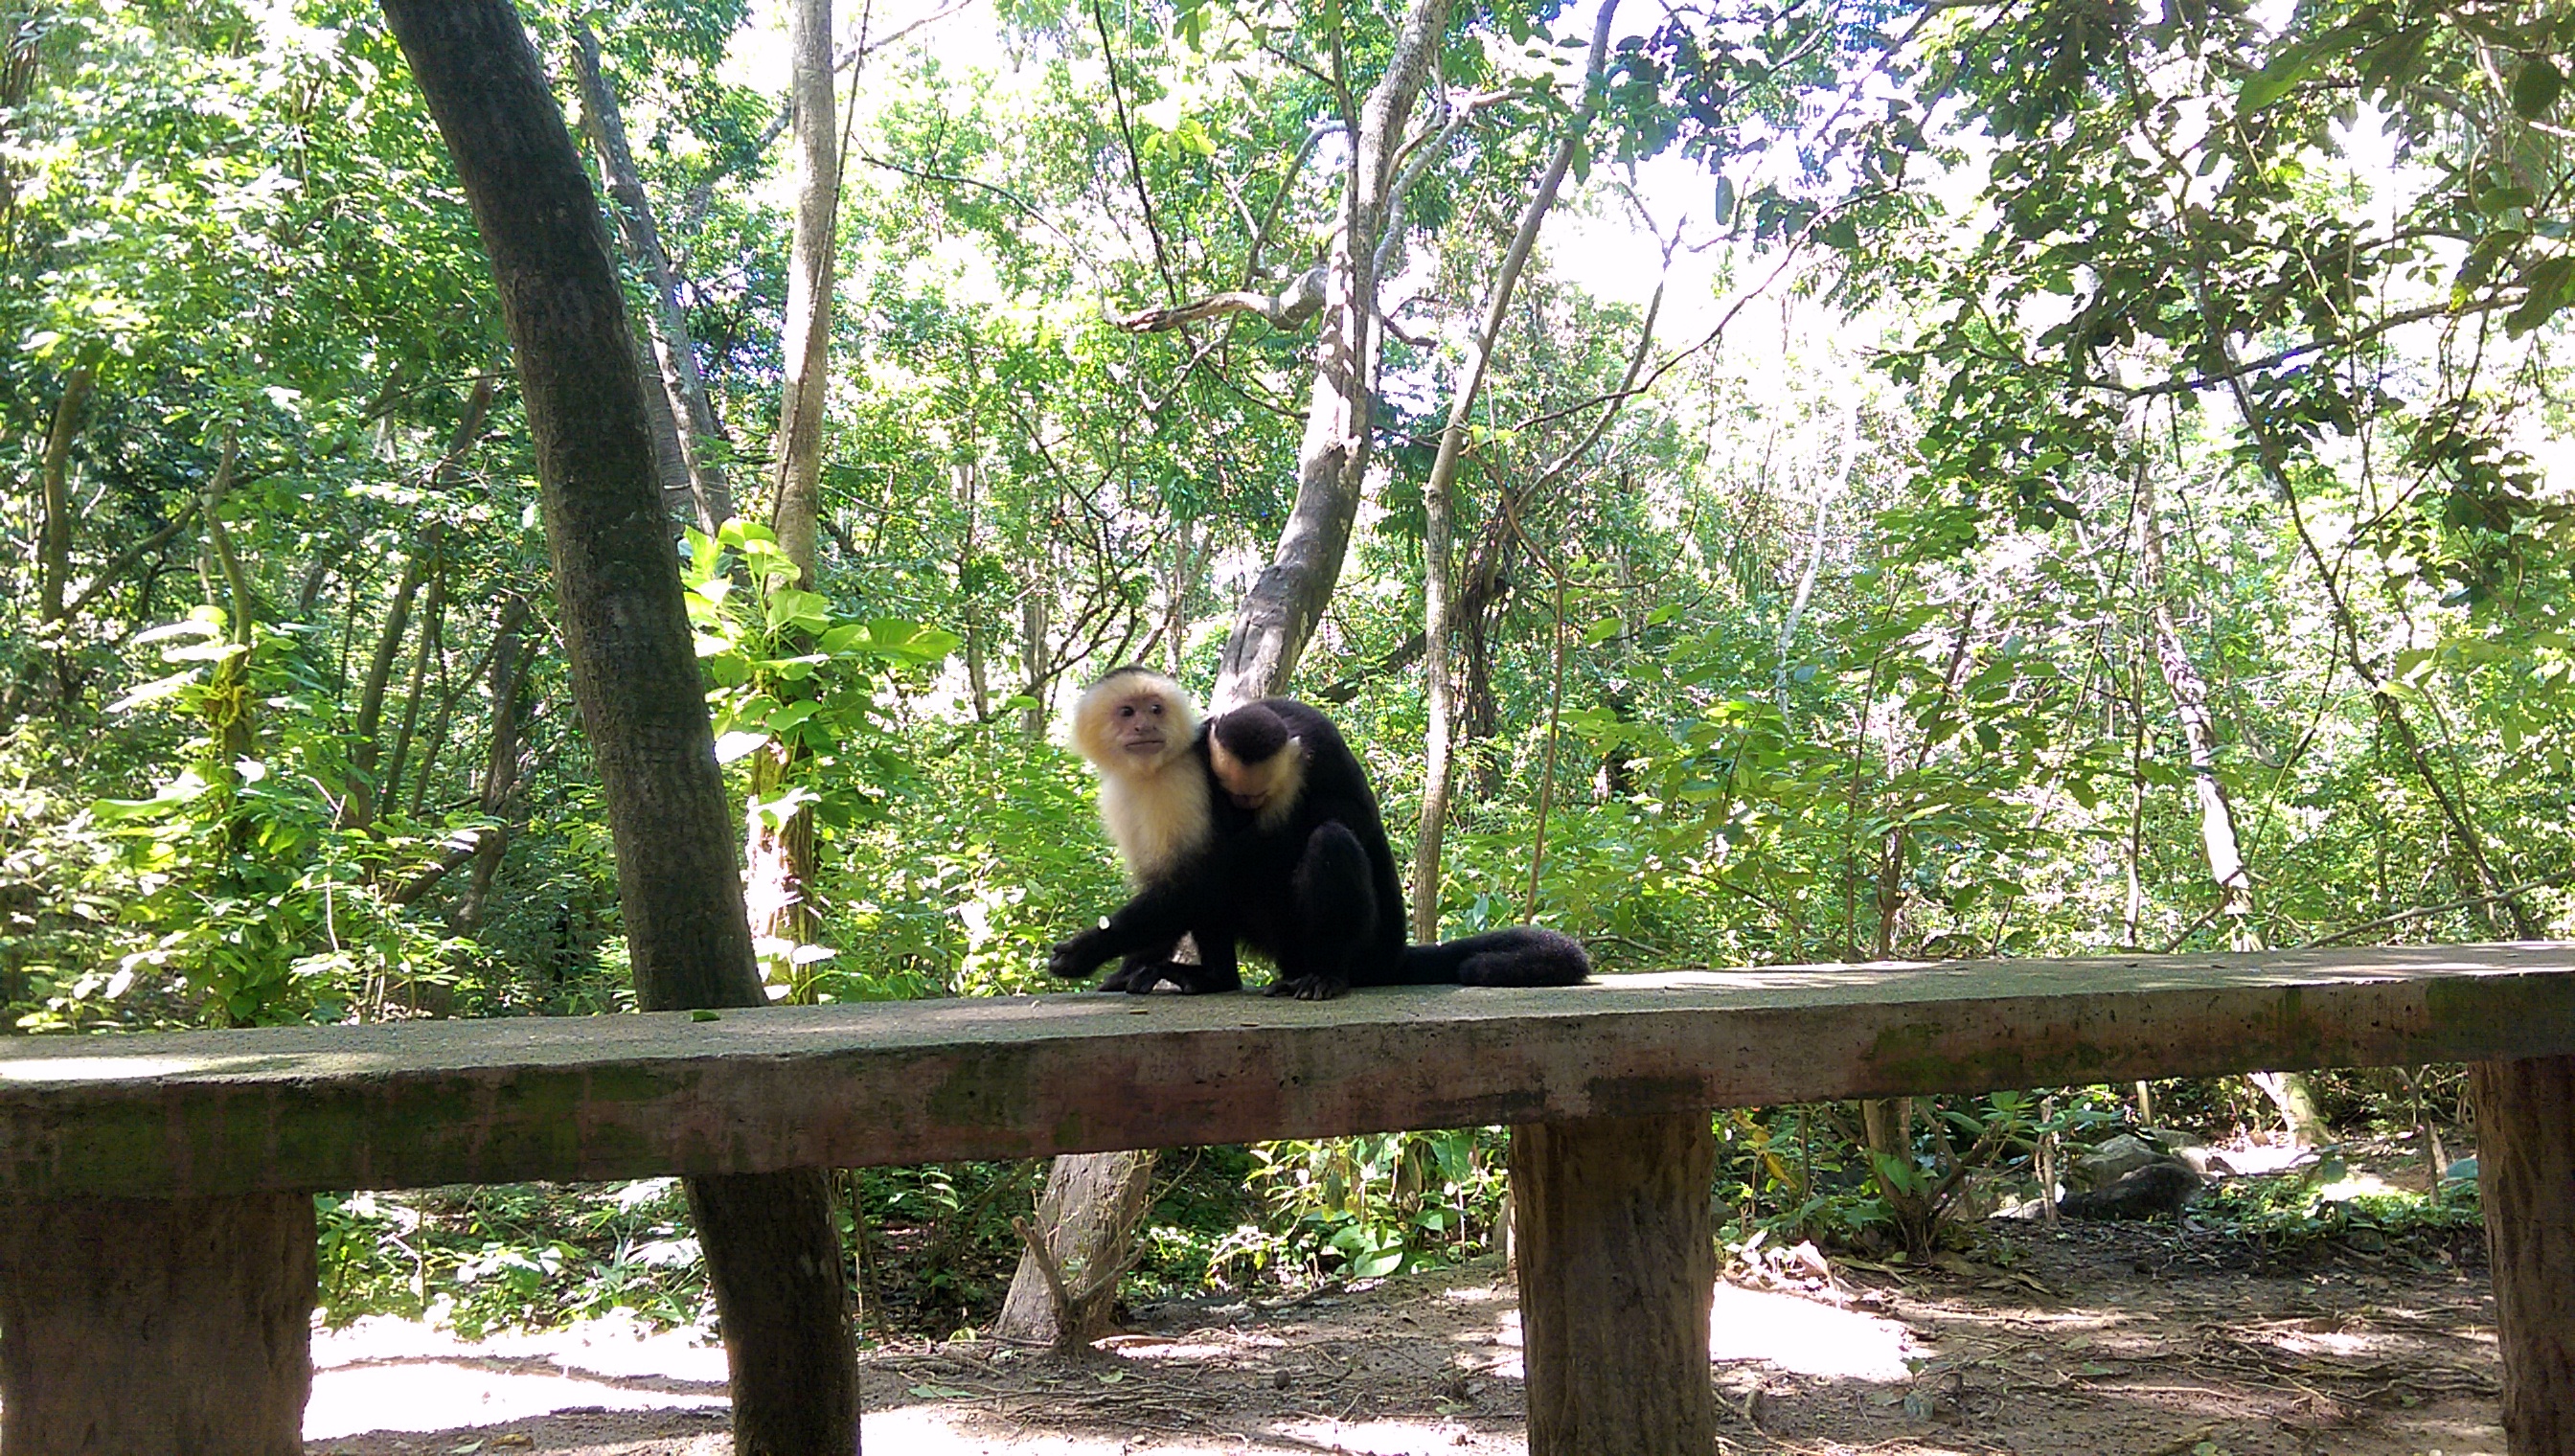 母猴子背着小猴子。据说这种猴子受刺激后会发飚…嗯 stand back